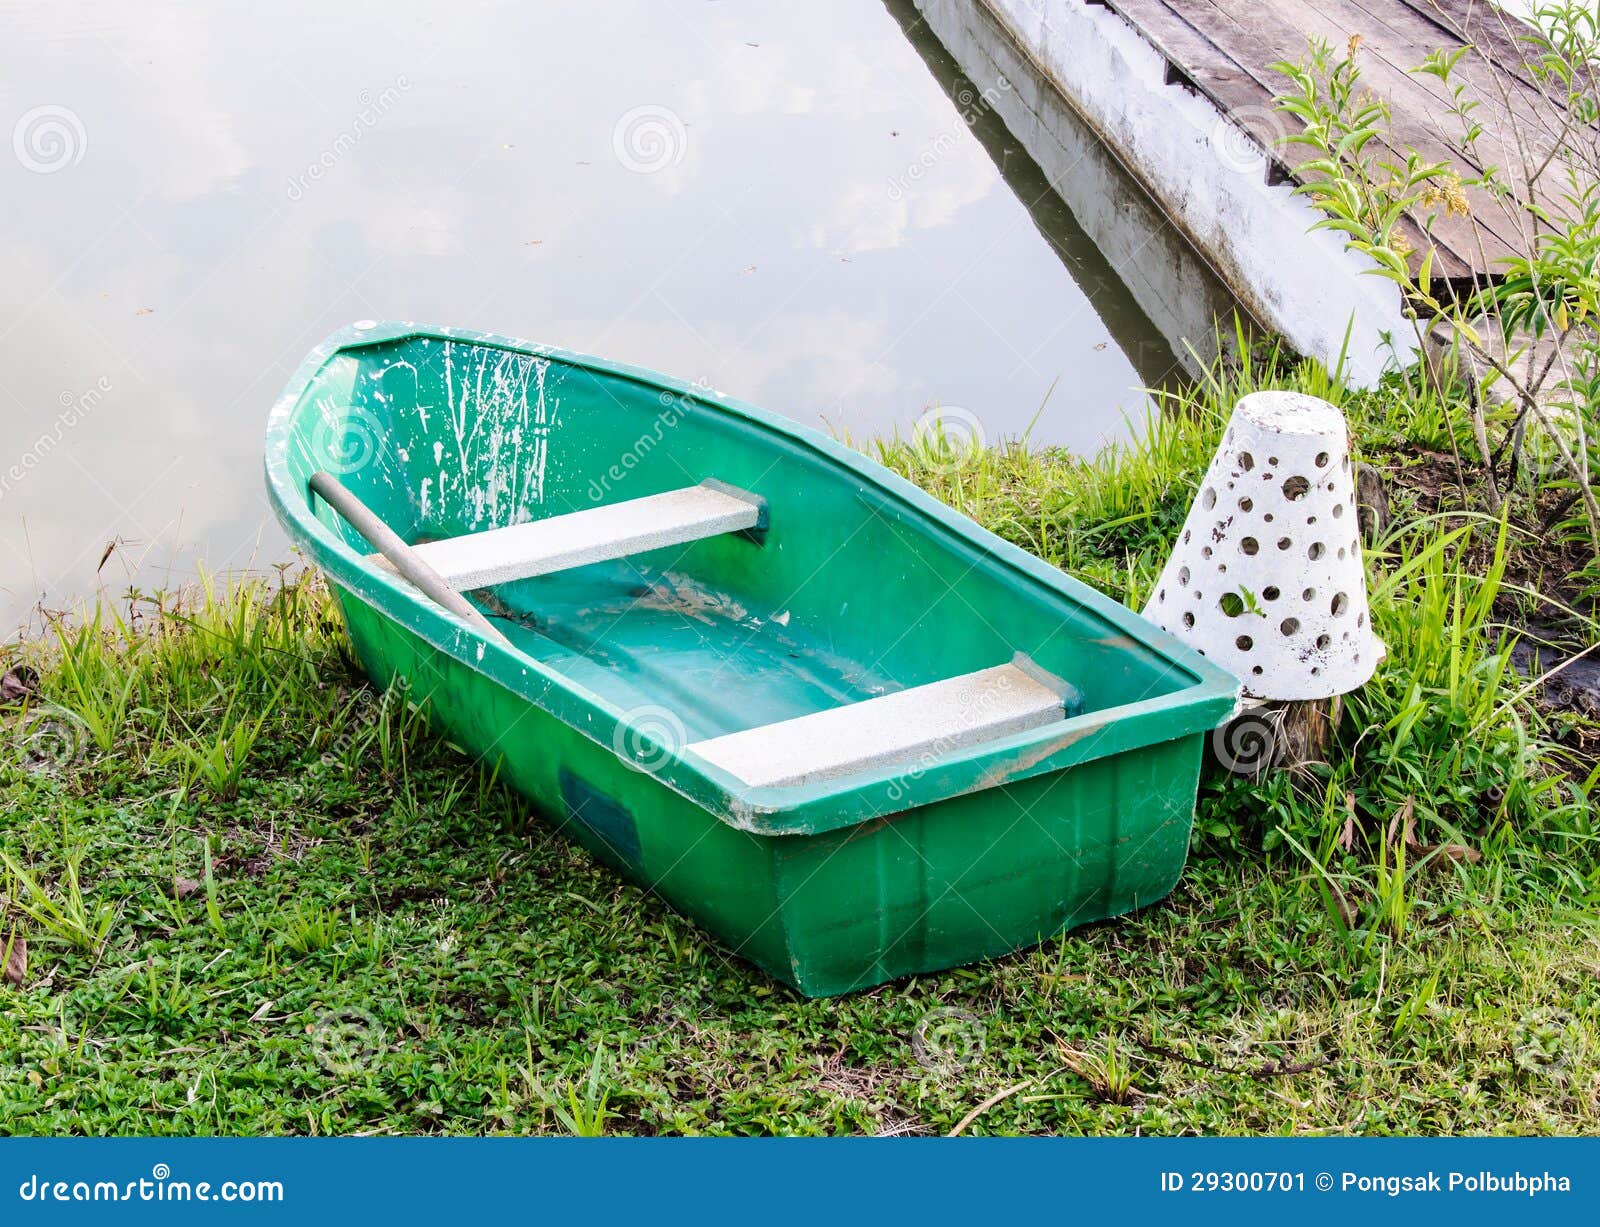 Plastic row boat stock image. Image of coast, reflection 